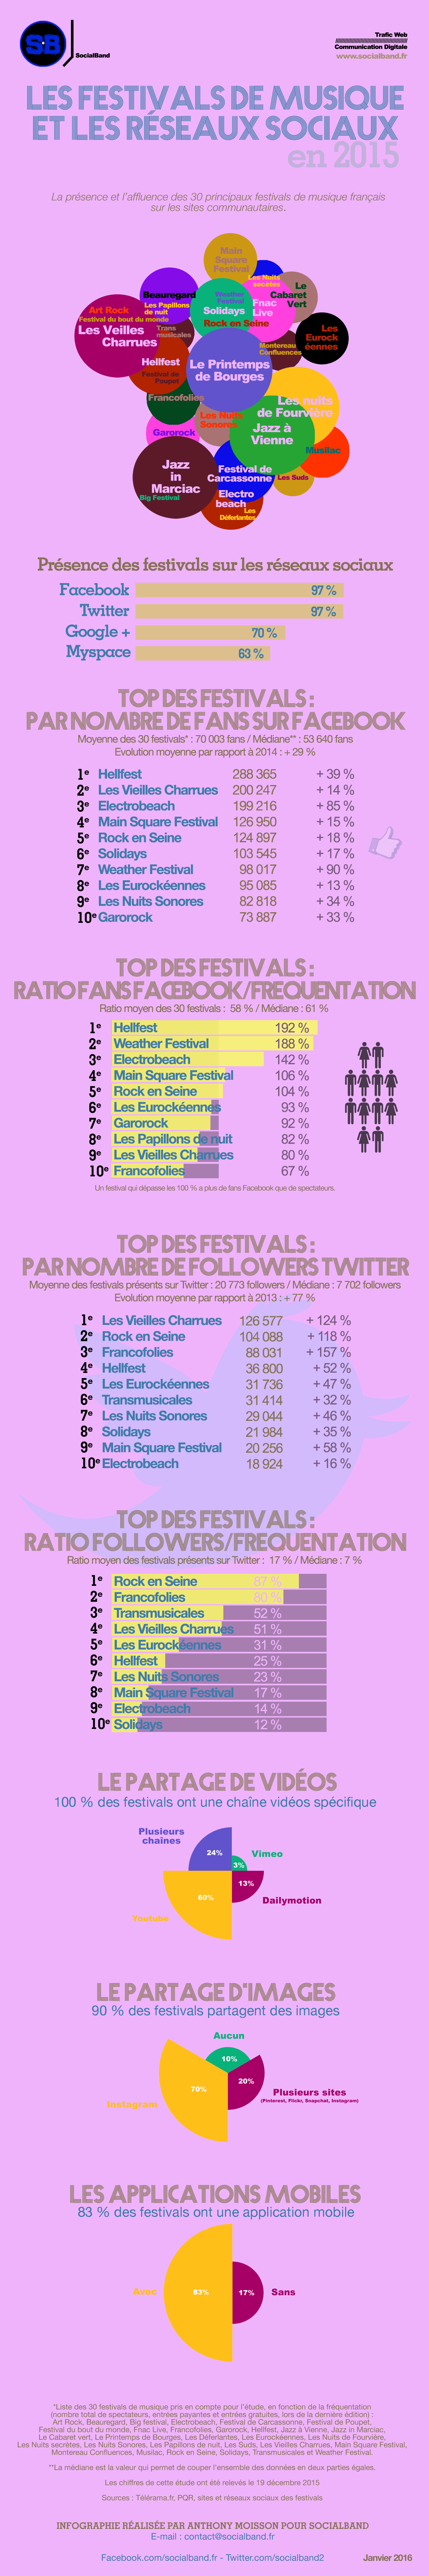 infographie_festivals_et_reseaux_sociaux_2015